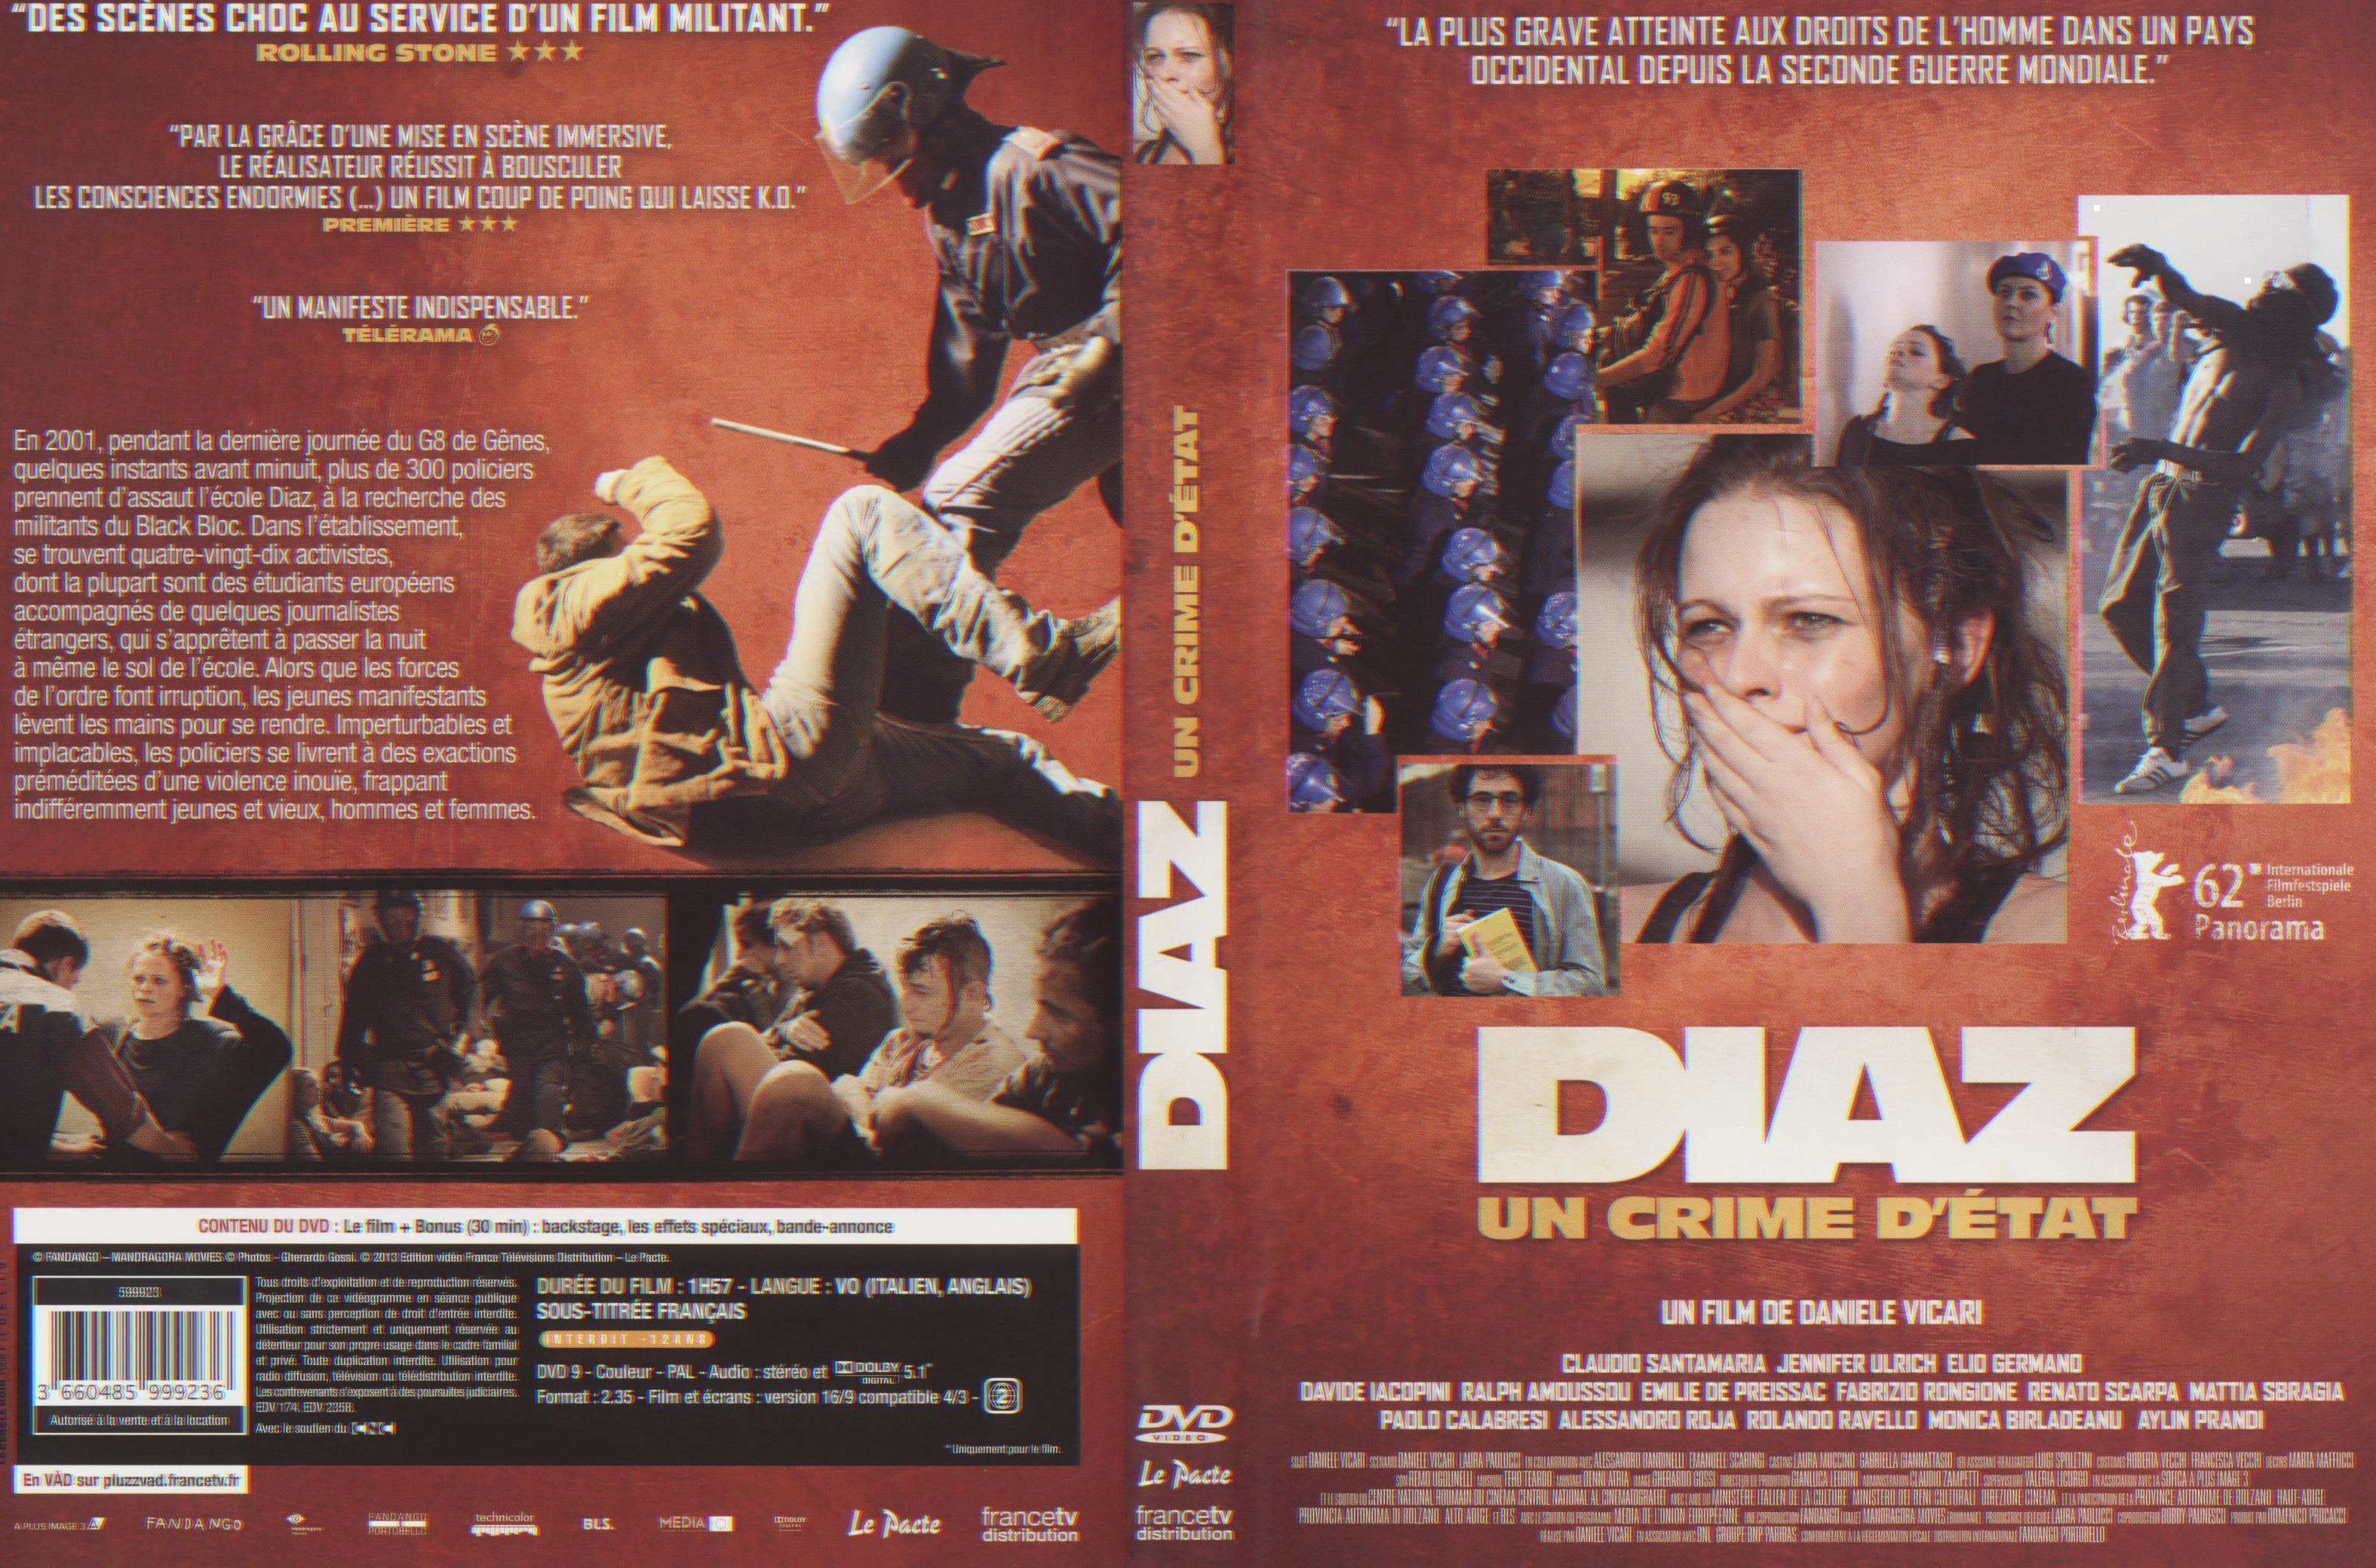 Diaz - Un Crime D'état